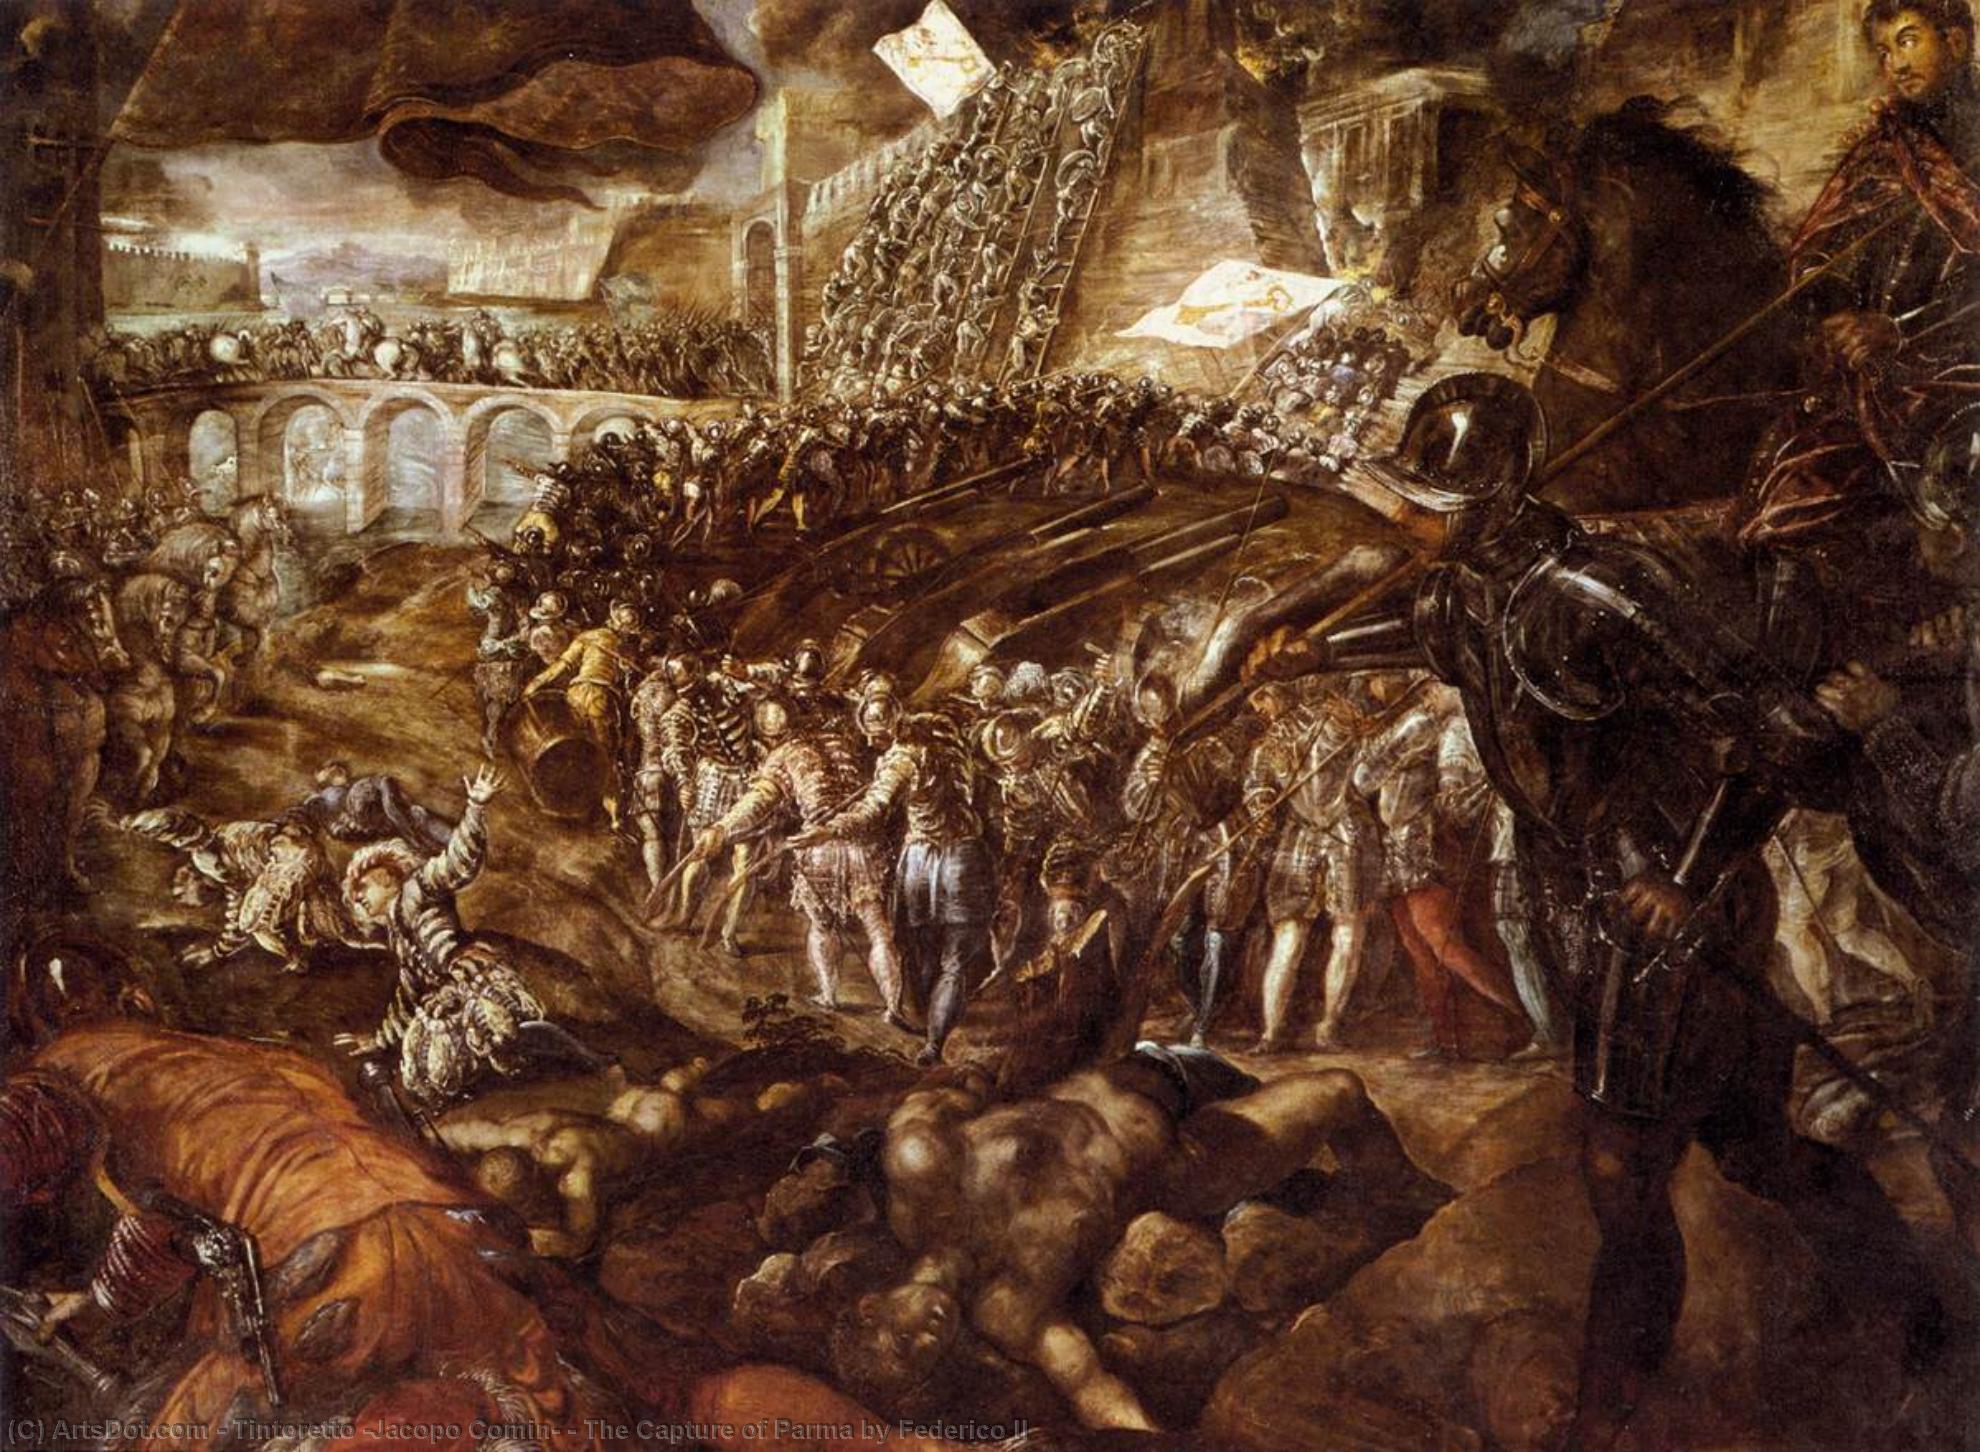 WikiOO.org - Enciclopédia das Belas Artes - Pintura, Arte por Tintoretto (Jacopo Comin) - The Capture of Parma by Federico II